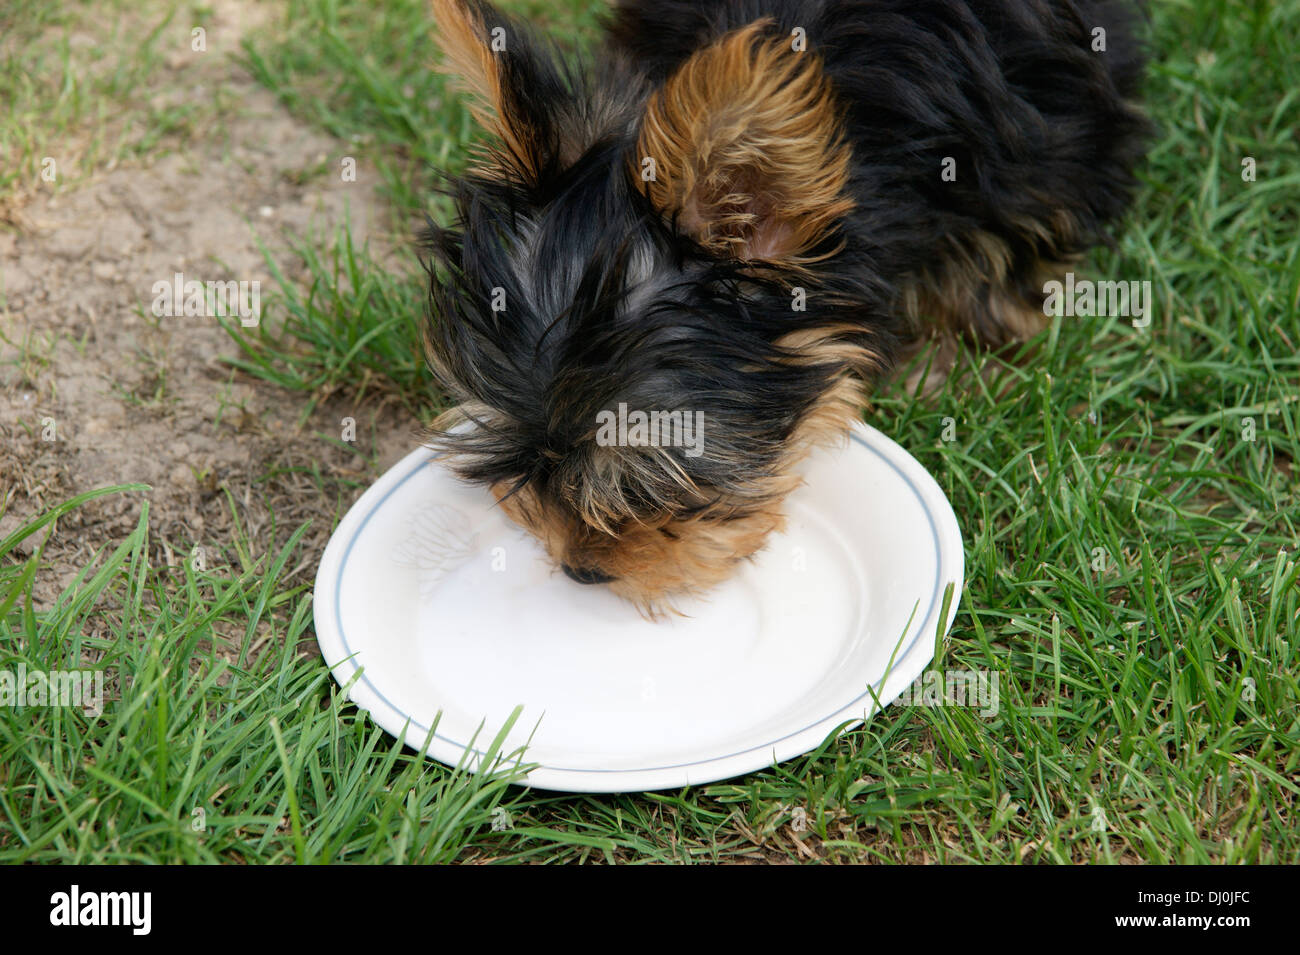 Mignon chiot yorkshire terrier dog boire du lait Banque D'Images